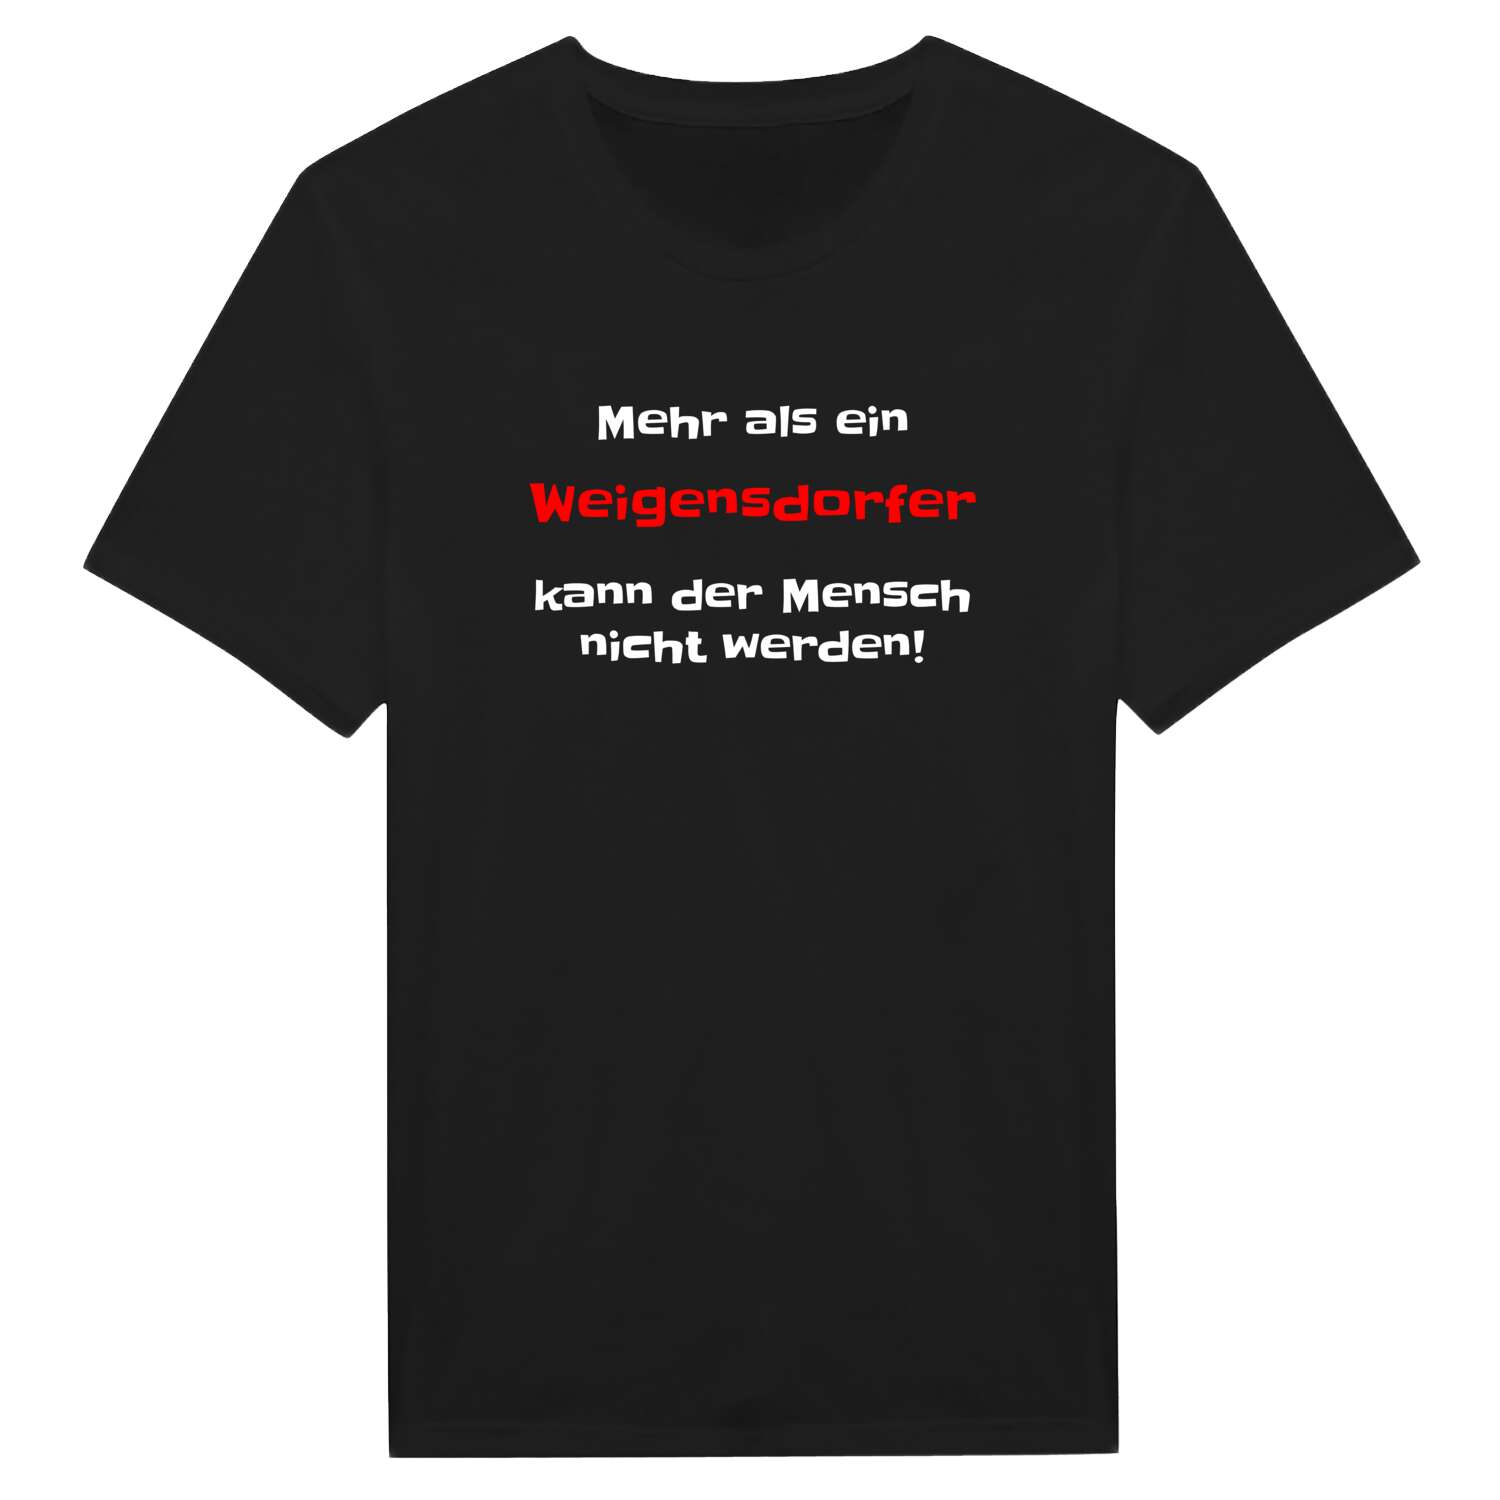 Weigensdorf T-Shirt »Mehr als ein«